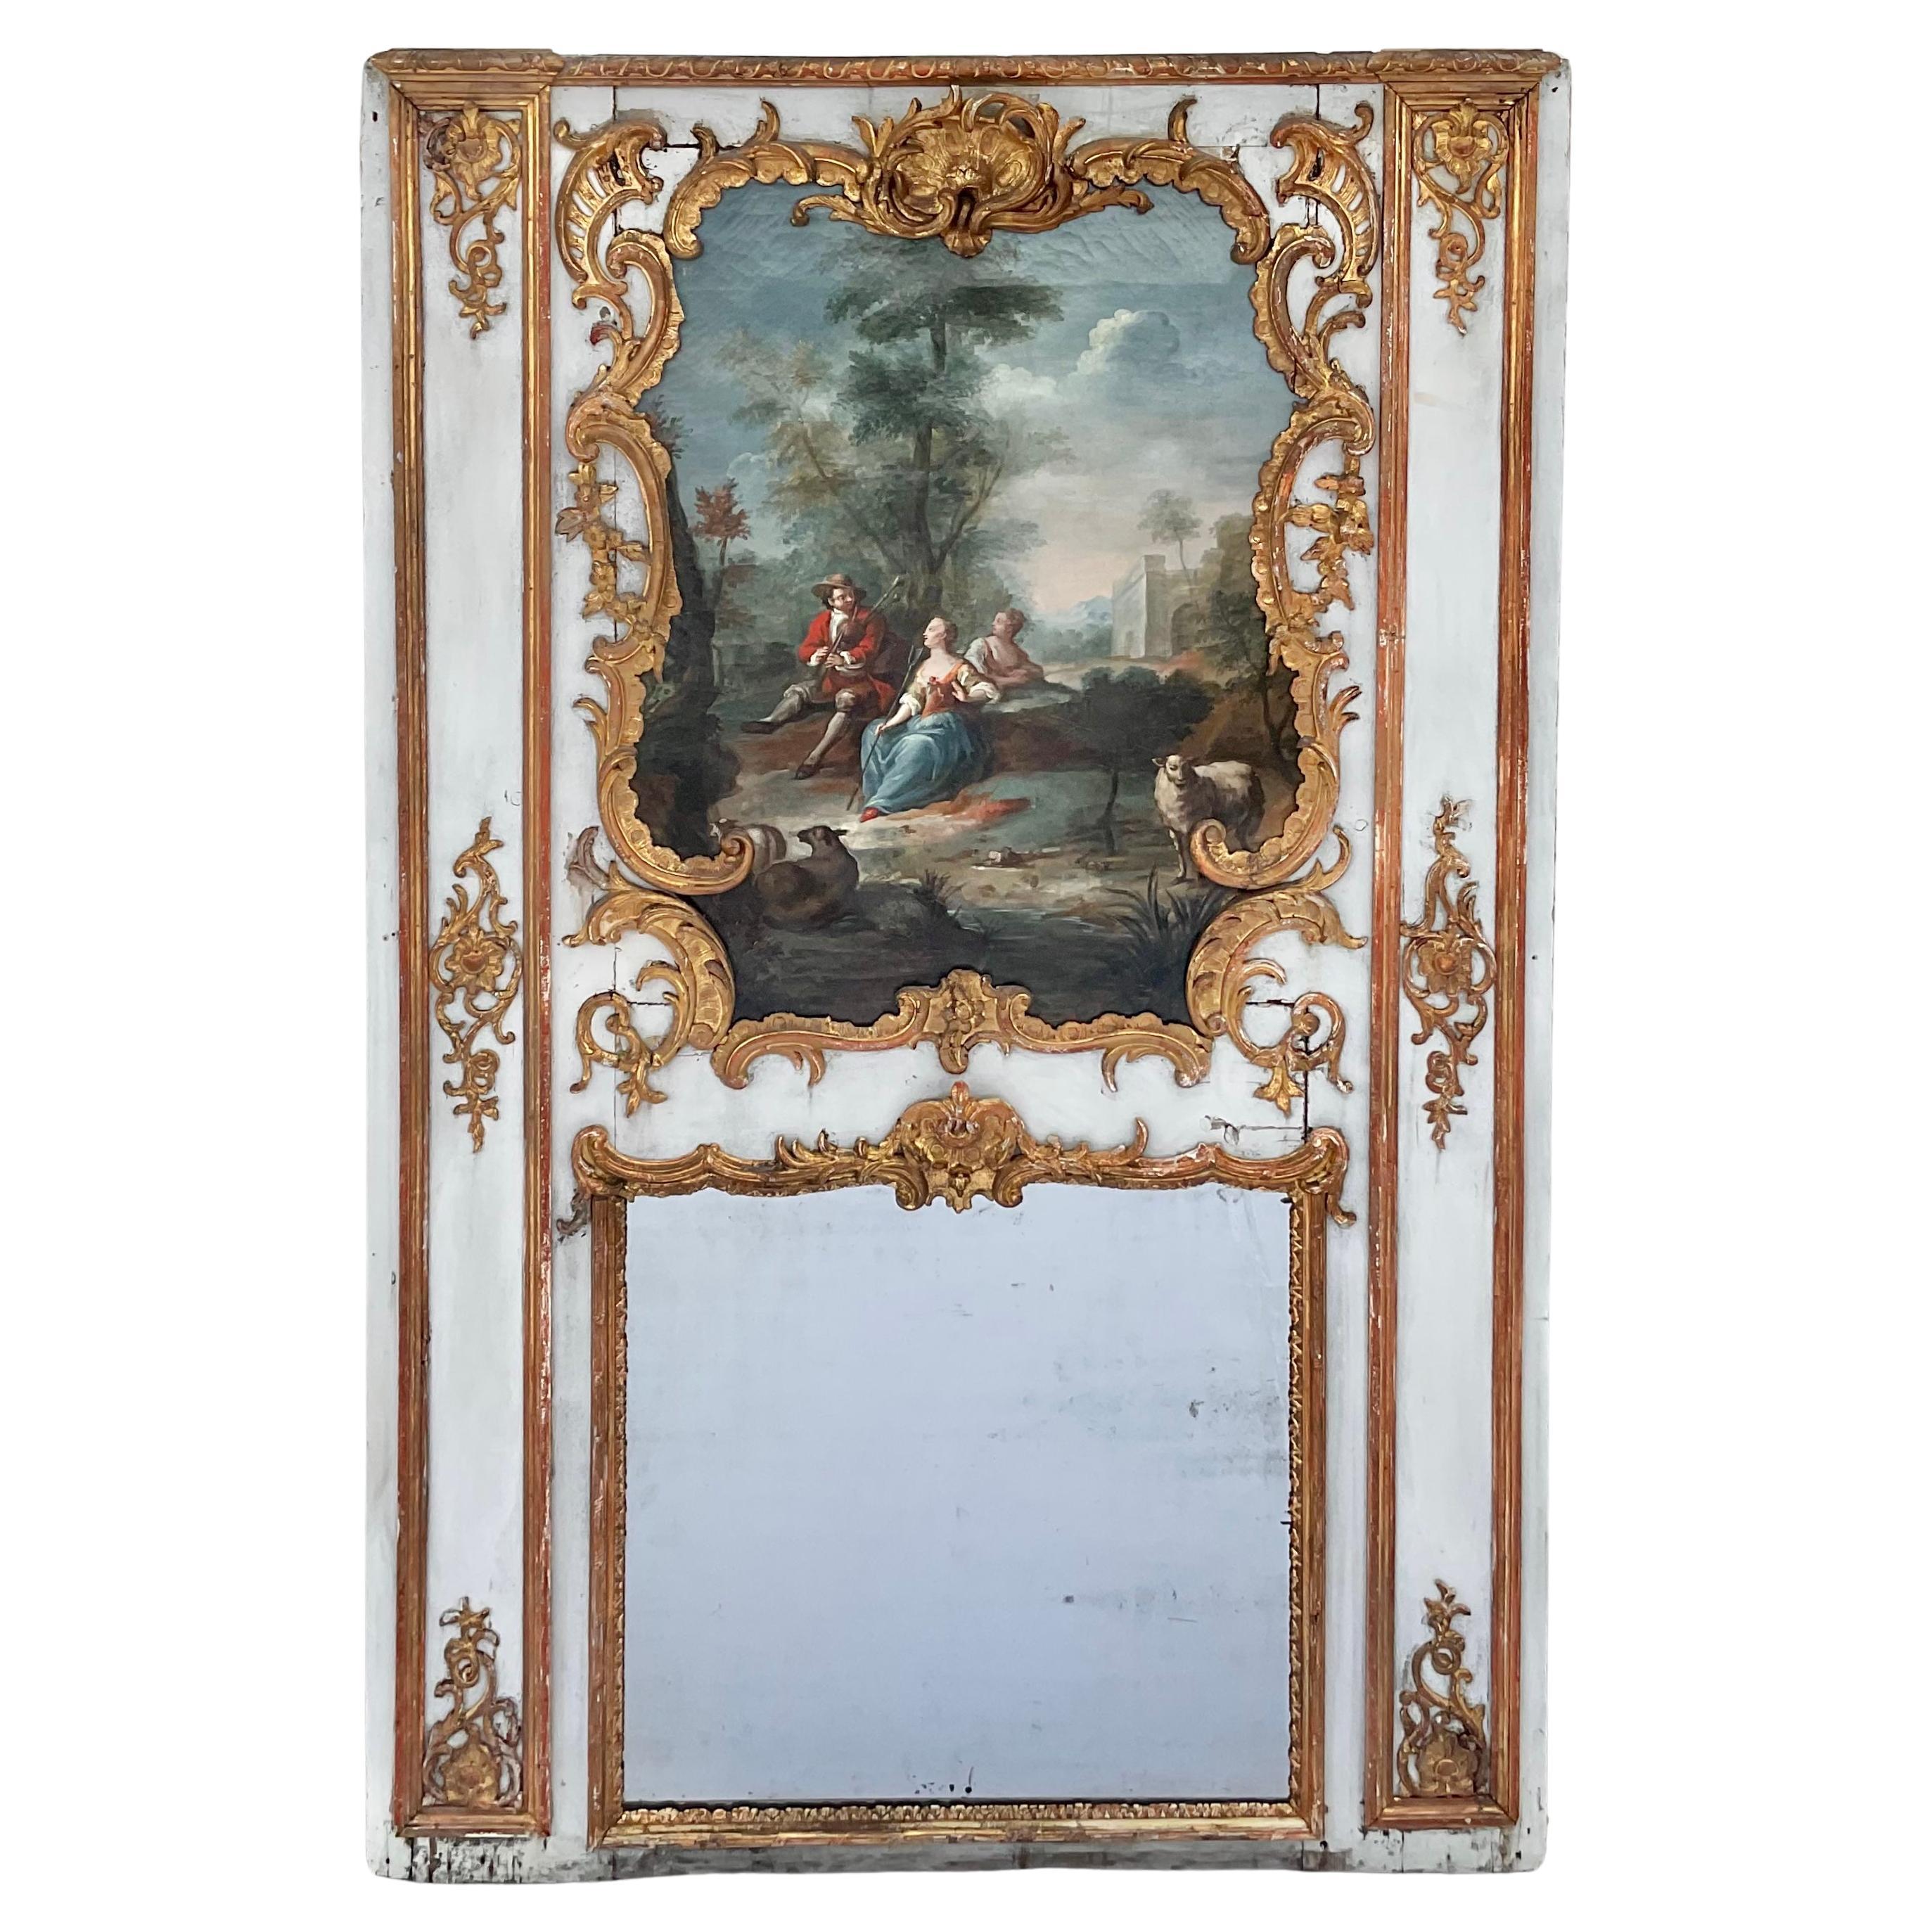 Monumental miroir Trumeau en bois doré français du 18ème siècle avec peinture d'origine